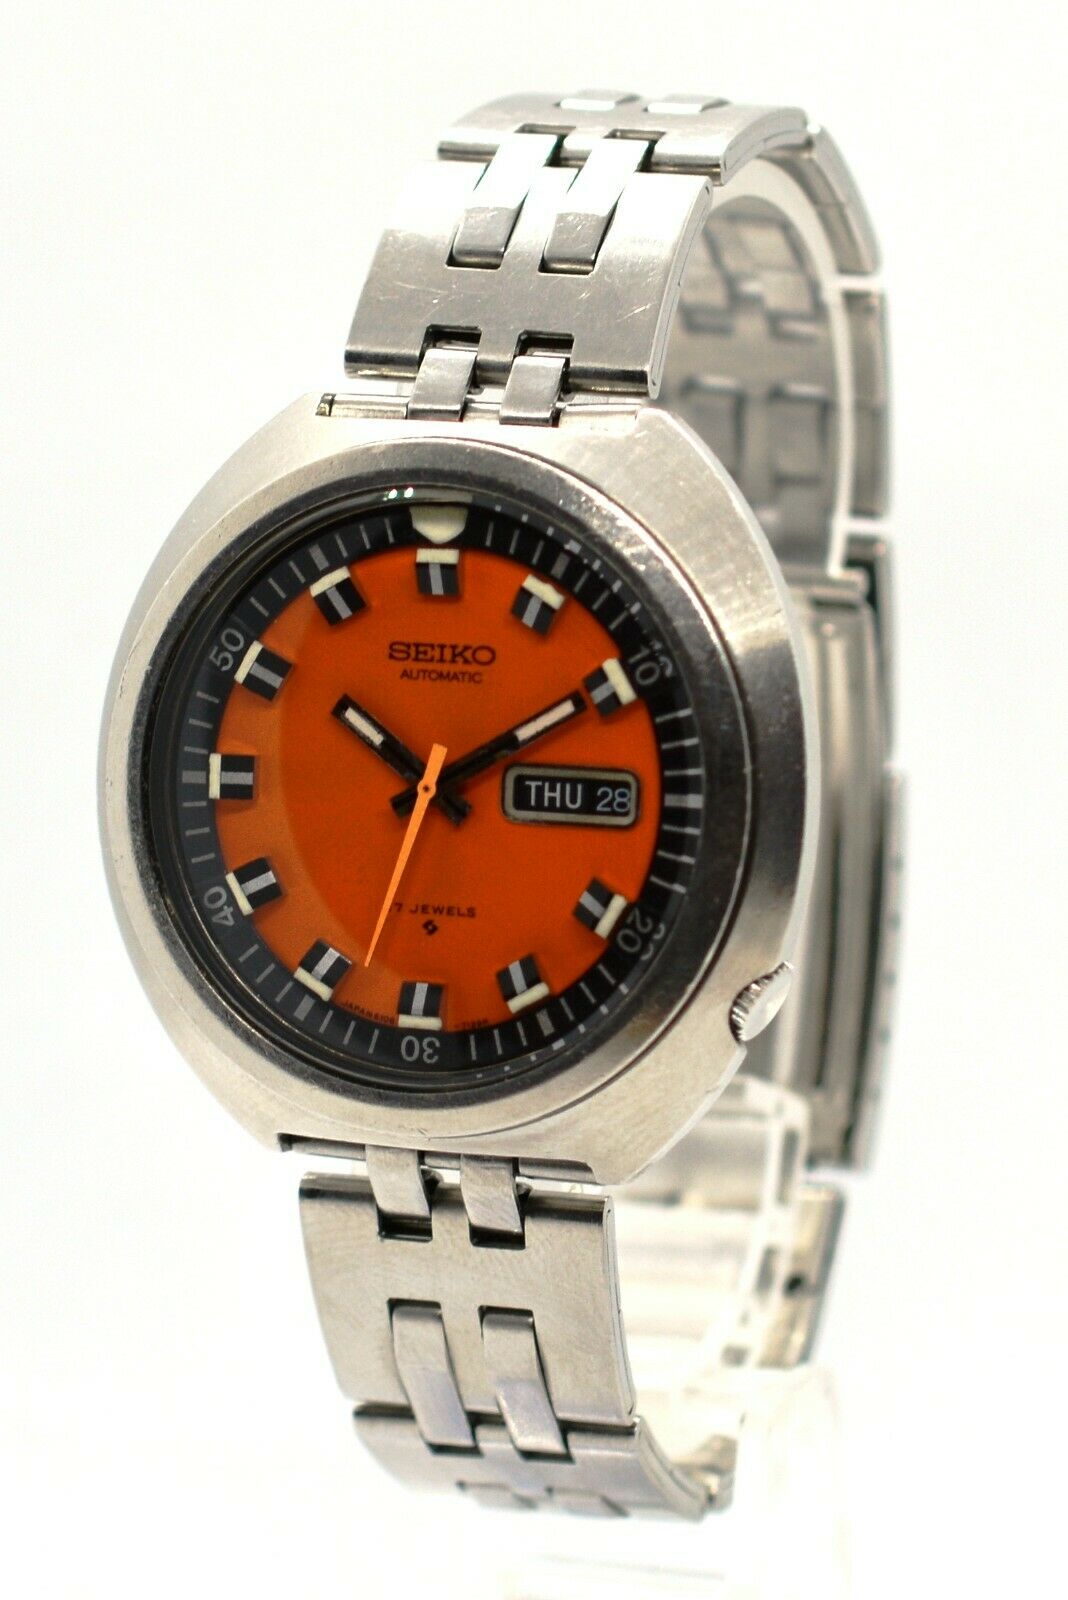 Seiko 70m Sport Diver (6106-7107) Market Price | WatchCharts